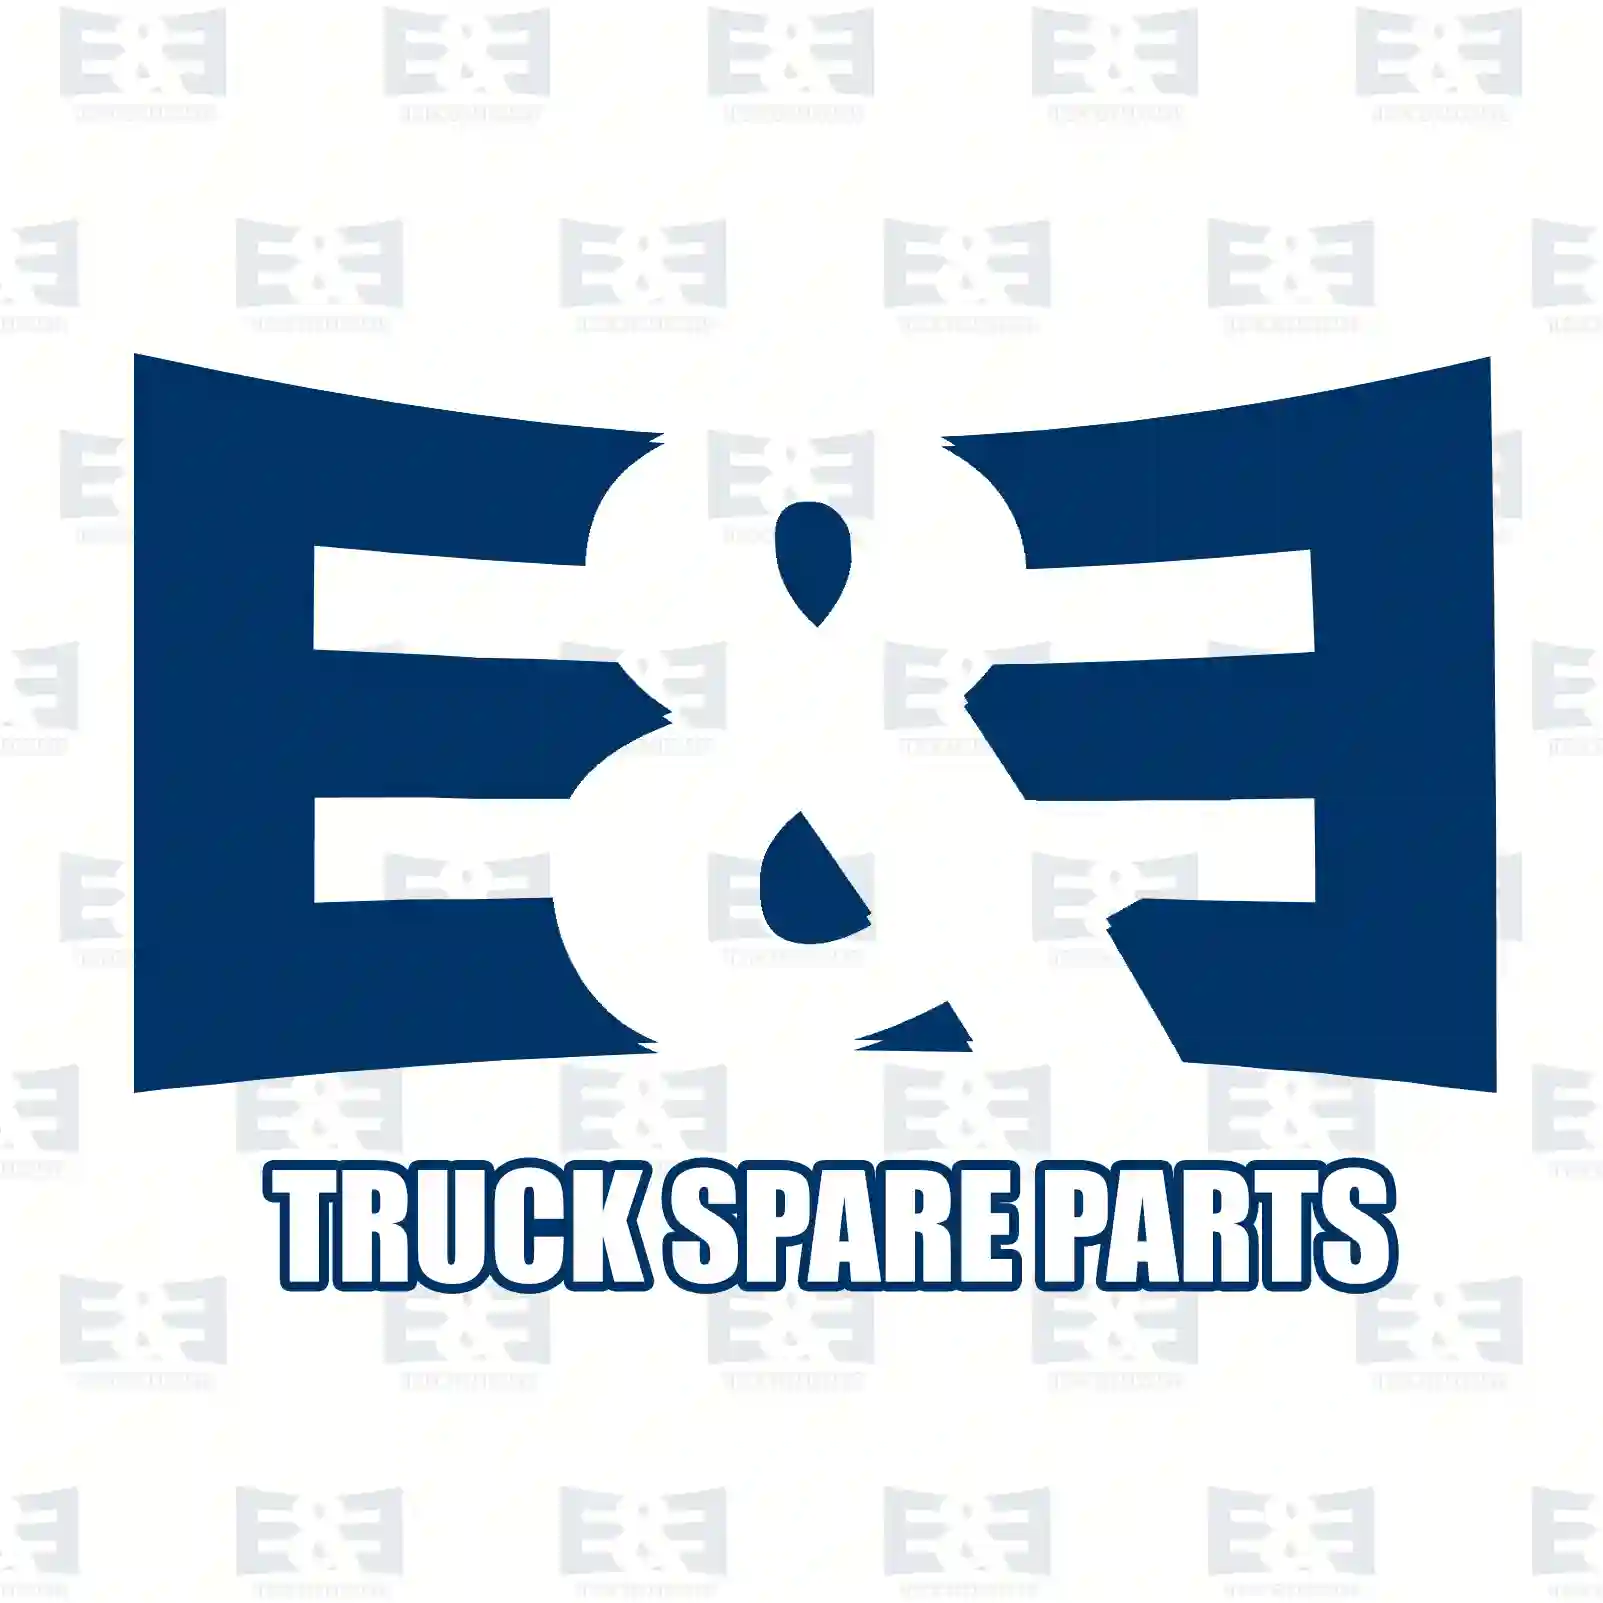 Brake cylinder, 2E2293266, 1313800, 1313841, 1313886, 1932626, ||  2E2293266 E&E Truck Spare Parts | Truck Spare Parts, Auotomotive Spare Parts Brake cylinder, 2E2293266, 1313800, 1313841, 1313886, 1932626, ||  2E2293266 E&E Truck Spare Parts | Truck Spare Parts, Auotomotive Spare Parts